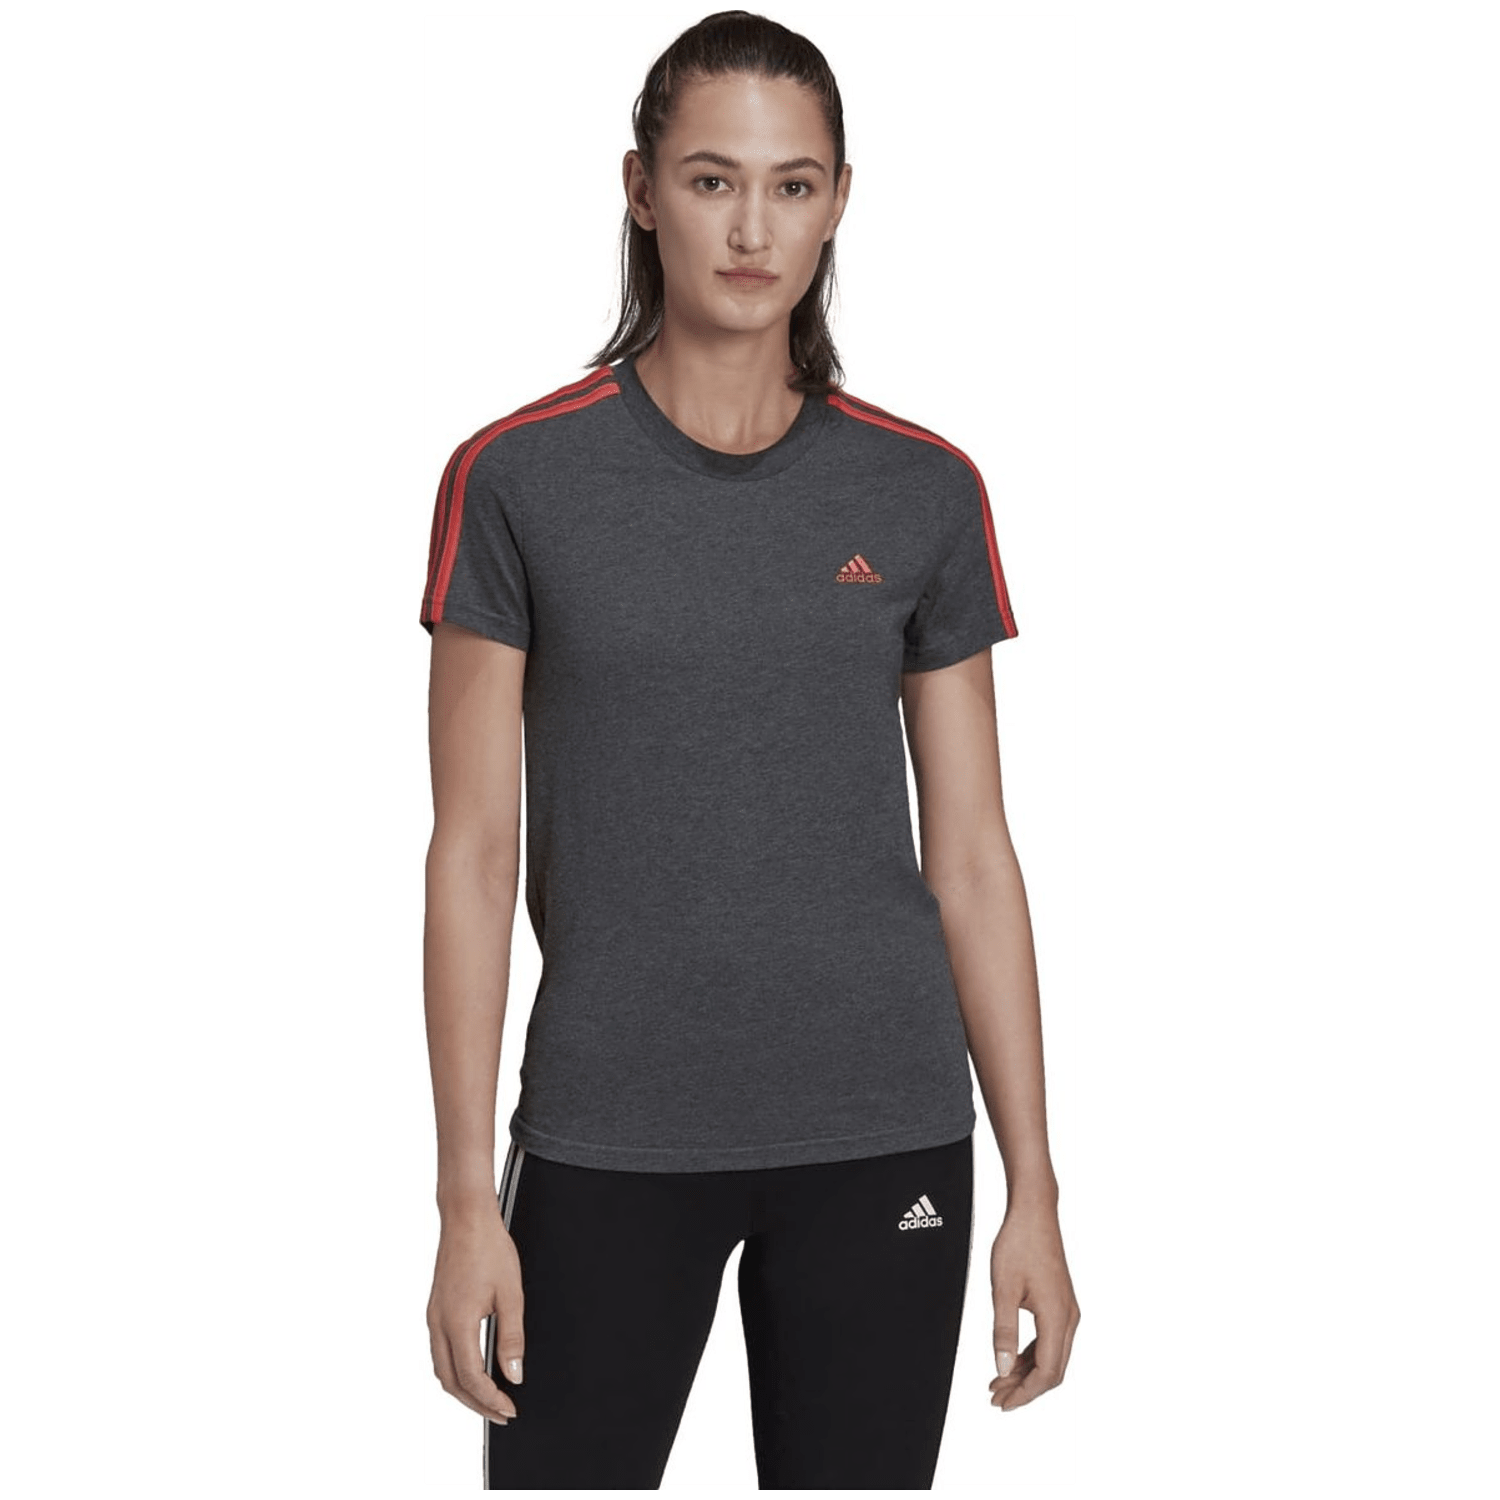 Adidas LOUNGEWEAR Essentials Slim 3-Streifen T-Shirt Damen